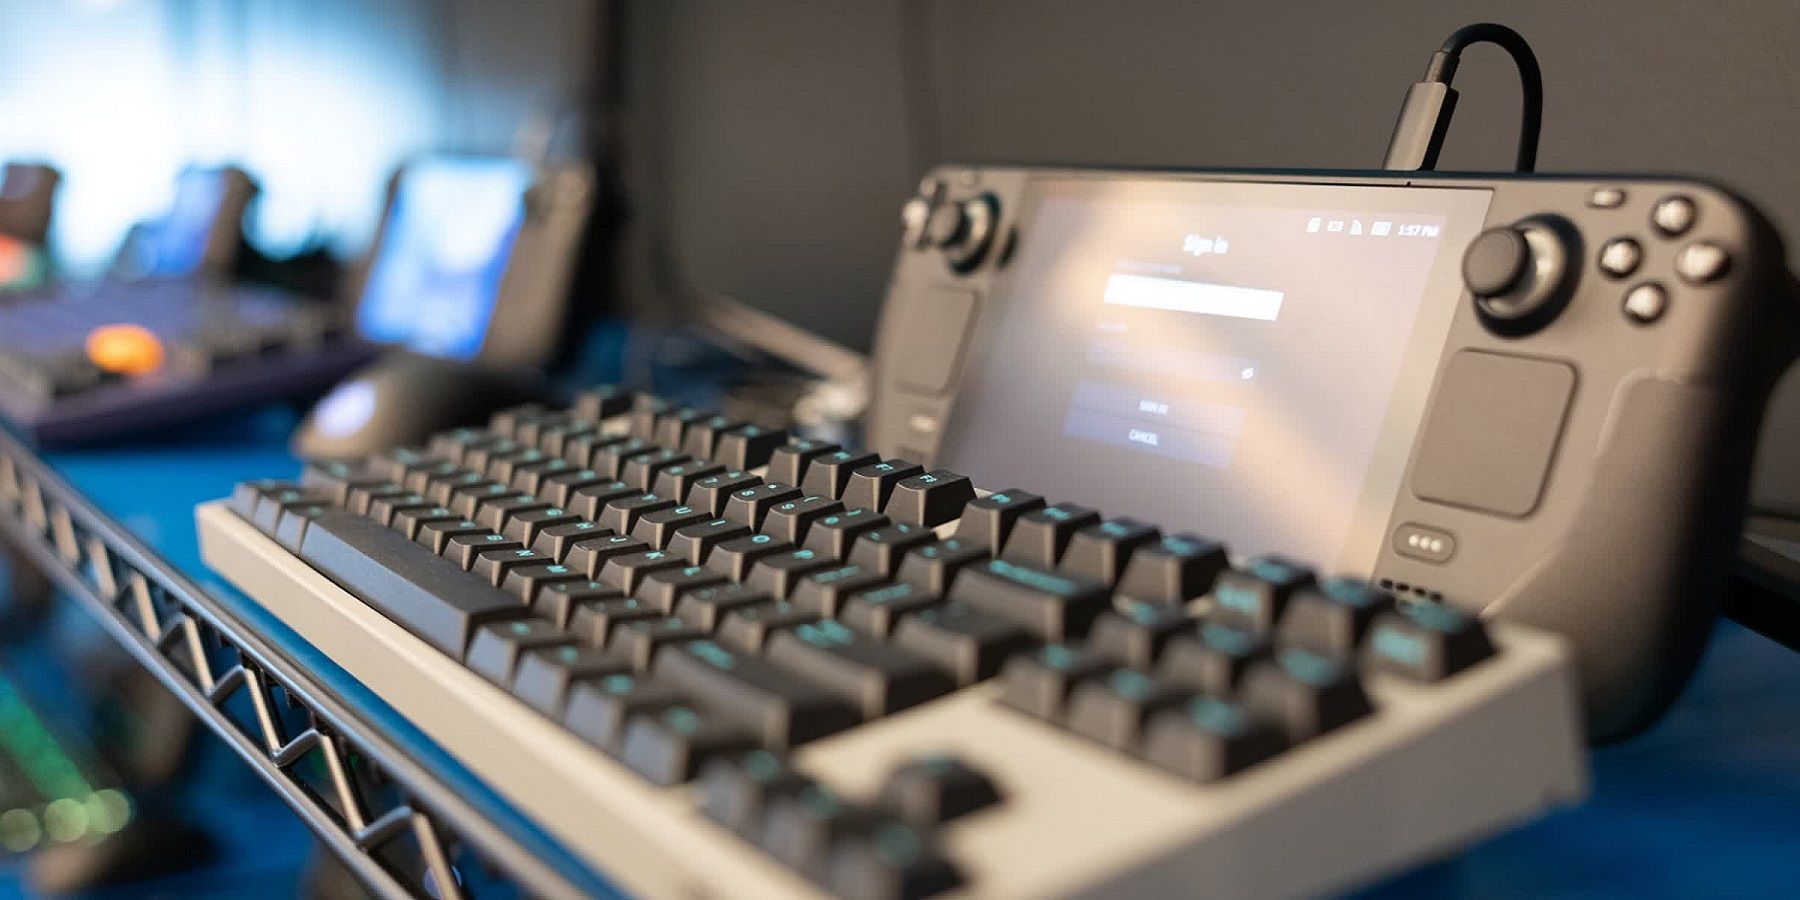 Фотография Steam Deck от Valve с прикрепленной к нему клавиатурой.